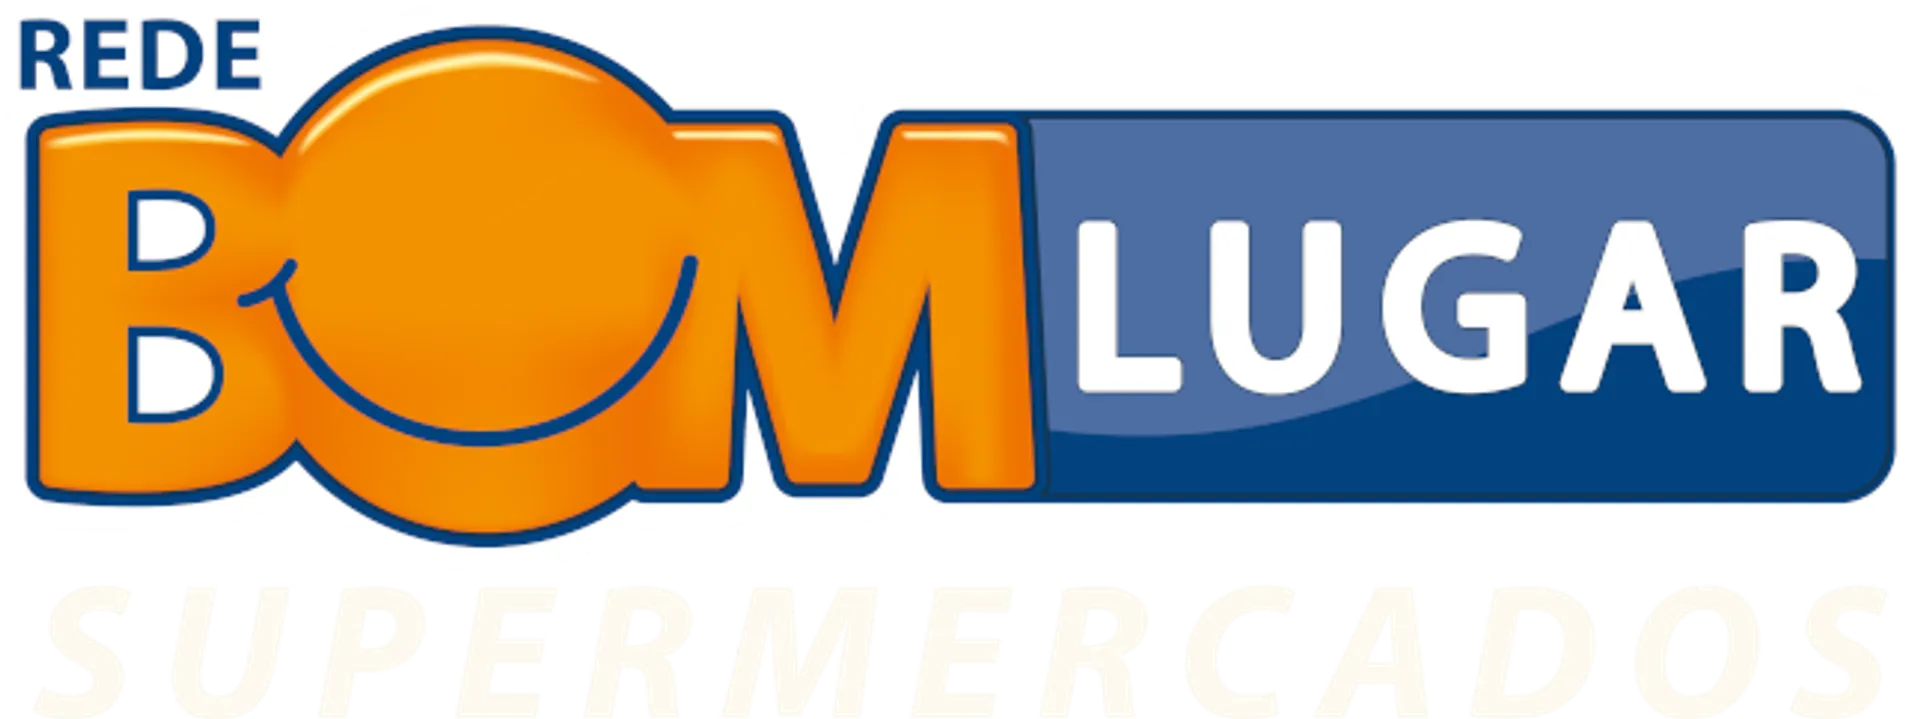 REDE BOM LUGAR logo